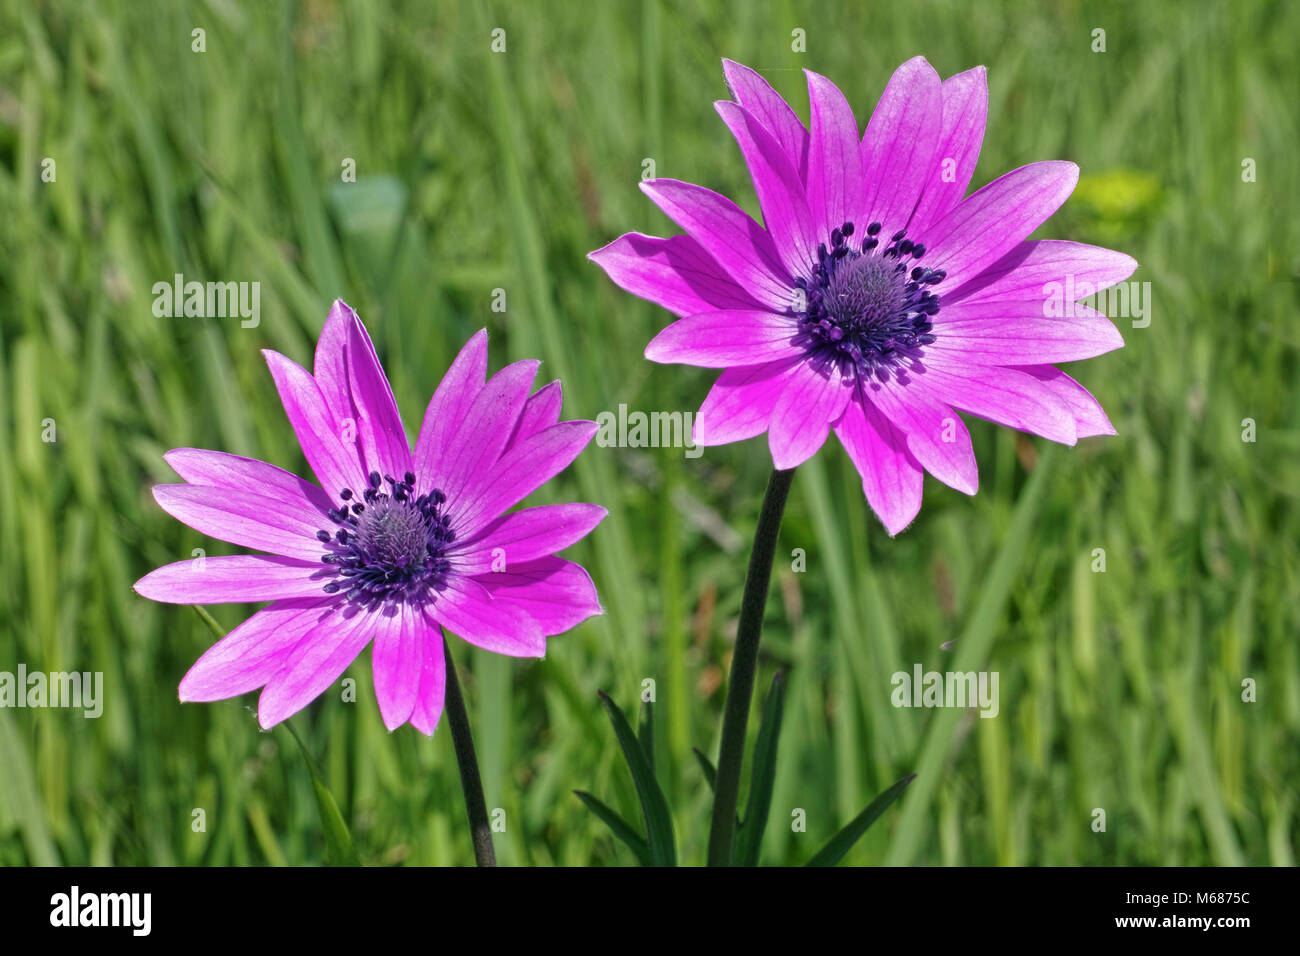 Due fiori immagini e fotografie stock ad alta risoluzione - Alamy